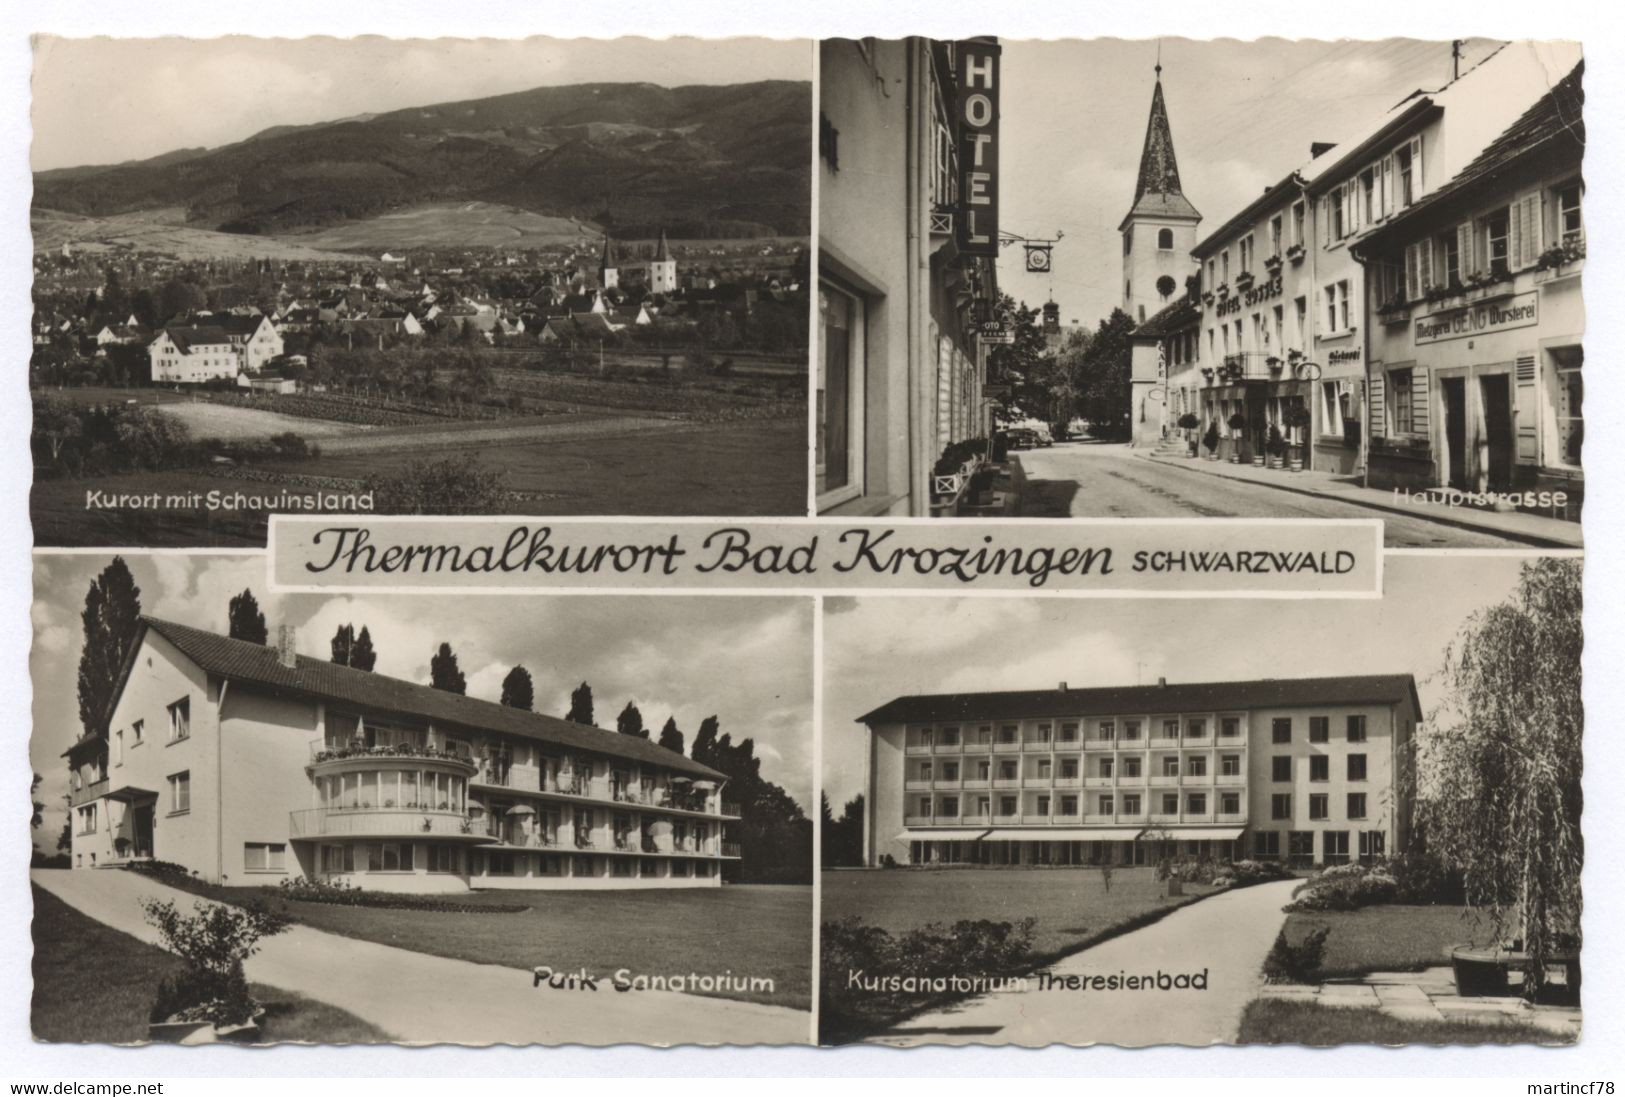 7812 Thermalkurort Bad Krozingen Schwarzwald 1958 Kurort Mit Schauinsland Hauptstrasse Park-Sanatorium Kursanatorium The - Bad Krozingen